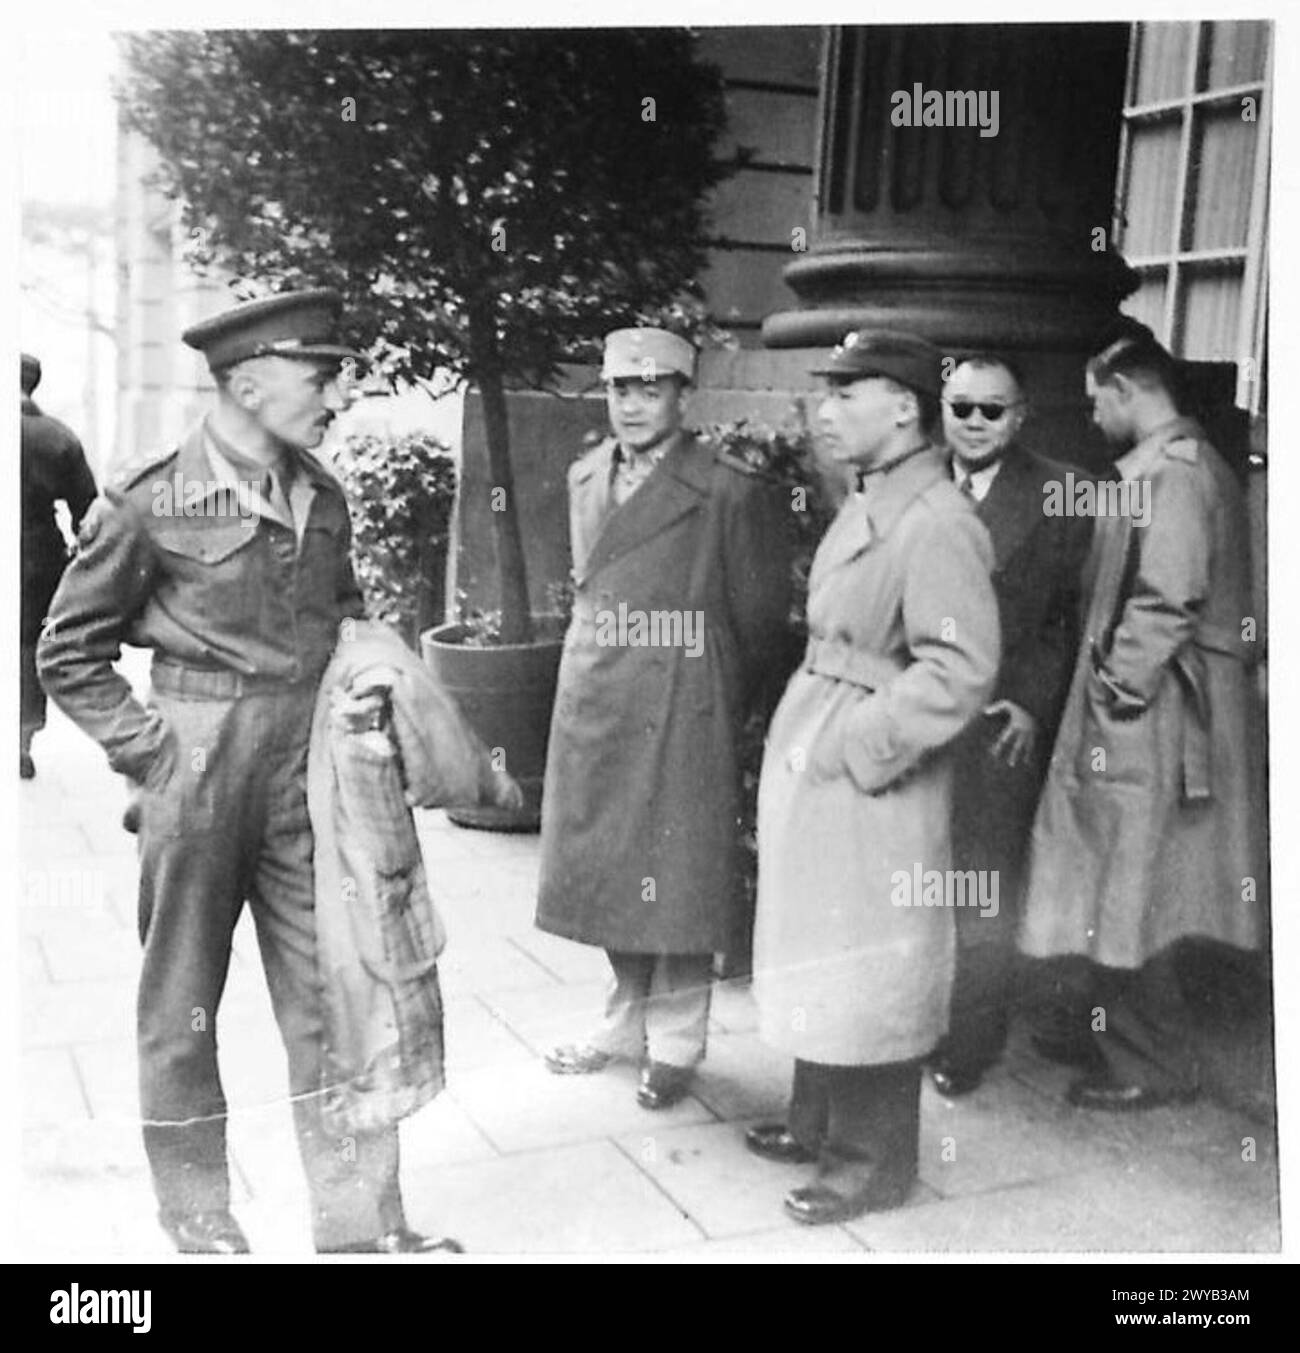 IL GENERALE CINESE VISITA AMBURGO - didascalia originale in tempo di guerra: Le immagini mostrano il generale Feng Yee e il suo gruppo fuori dall'Atlantic Hotel, dove hanno soggiornato durante la loro visita. Negativo fotografico , British Army of the Rhine Foto Stock